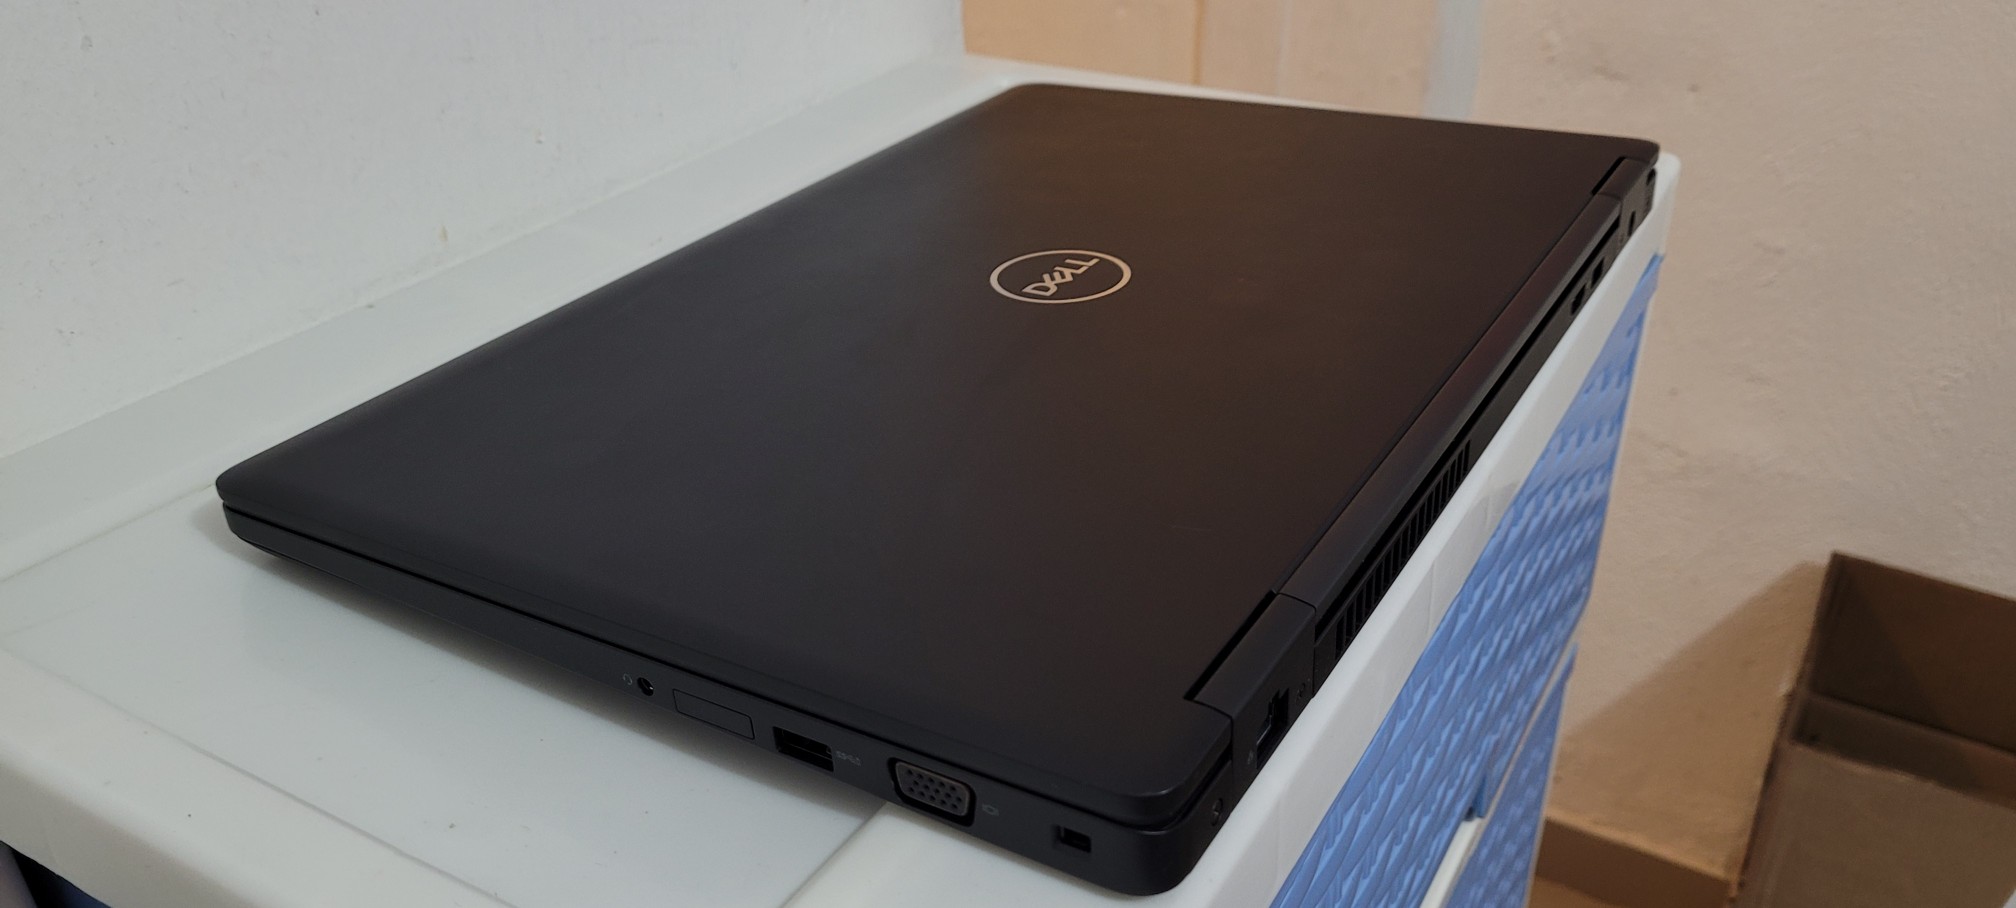 computadoras y laptops - Dell 5580 17 Pulg Core i5 7ma Gen Ram 8gb ddr4 Disco 128gb Y 1tb New 2